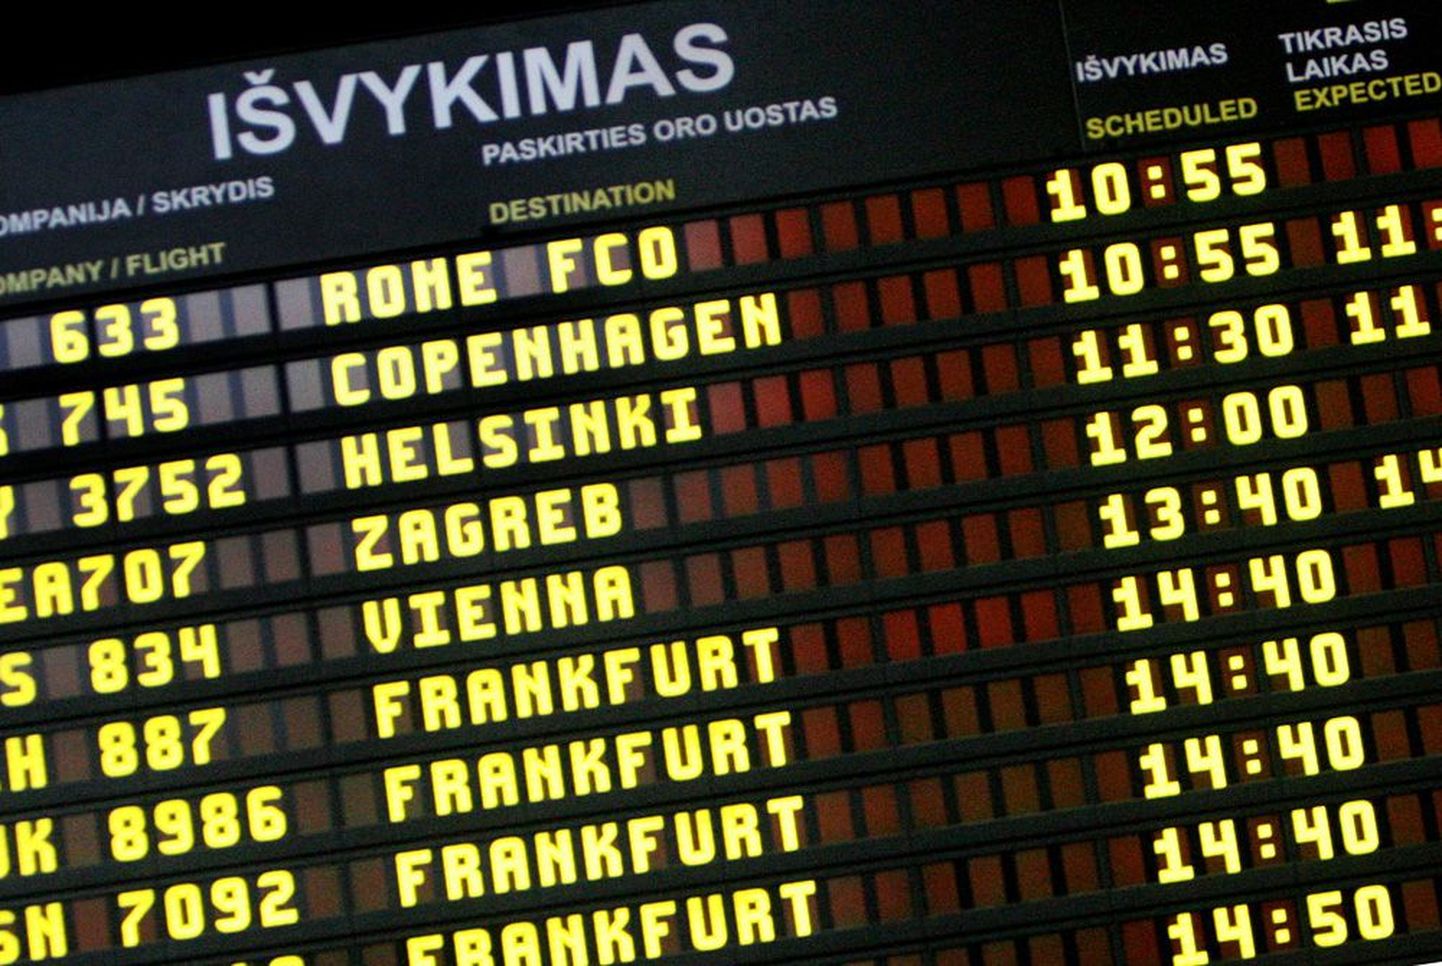 Vilniust on nimetatud kõige raskemini ligipääsetavaks pealinnaks Euroopas, seetõttu püüab sealne lennujaam meelitada lennufirmasid riigis uusi liine avama.